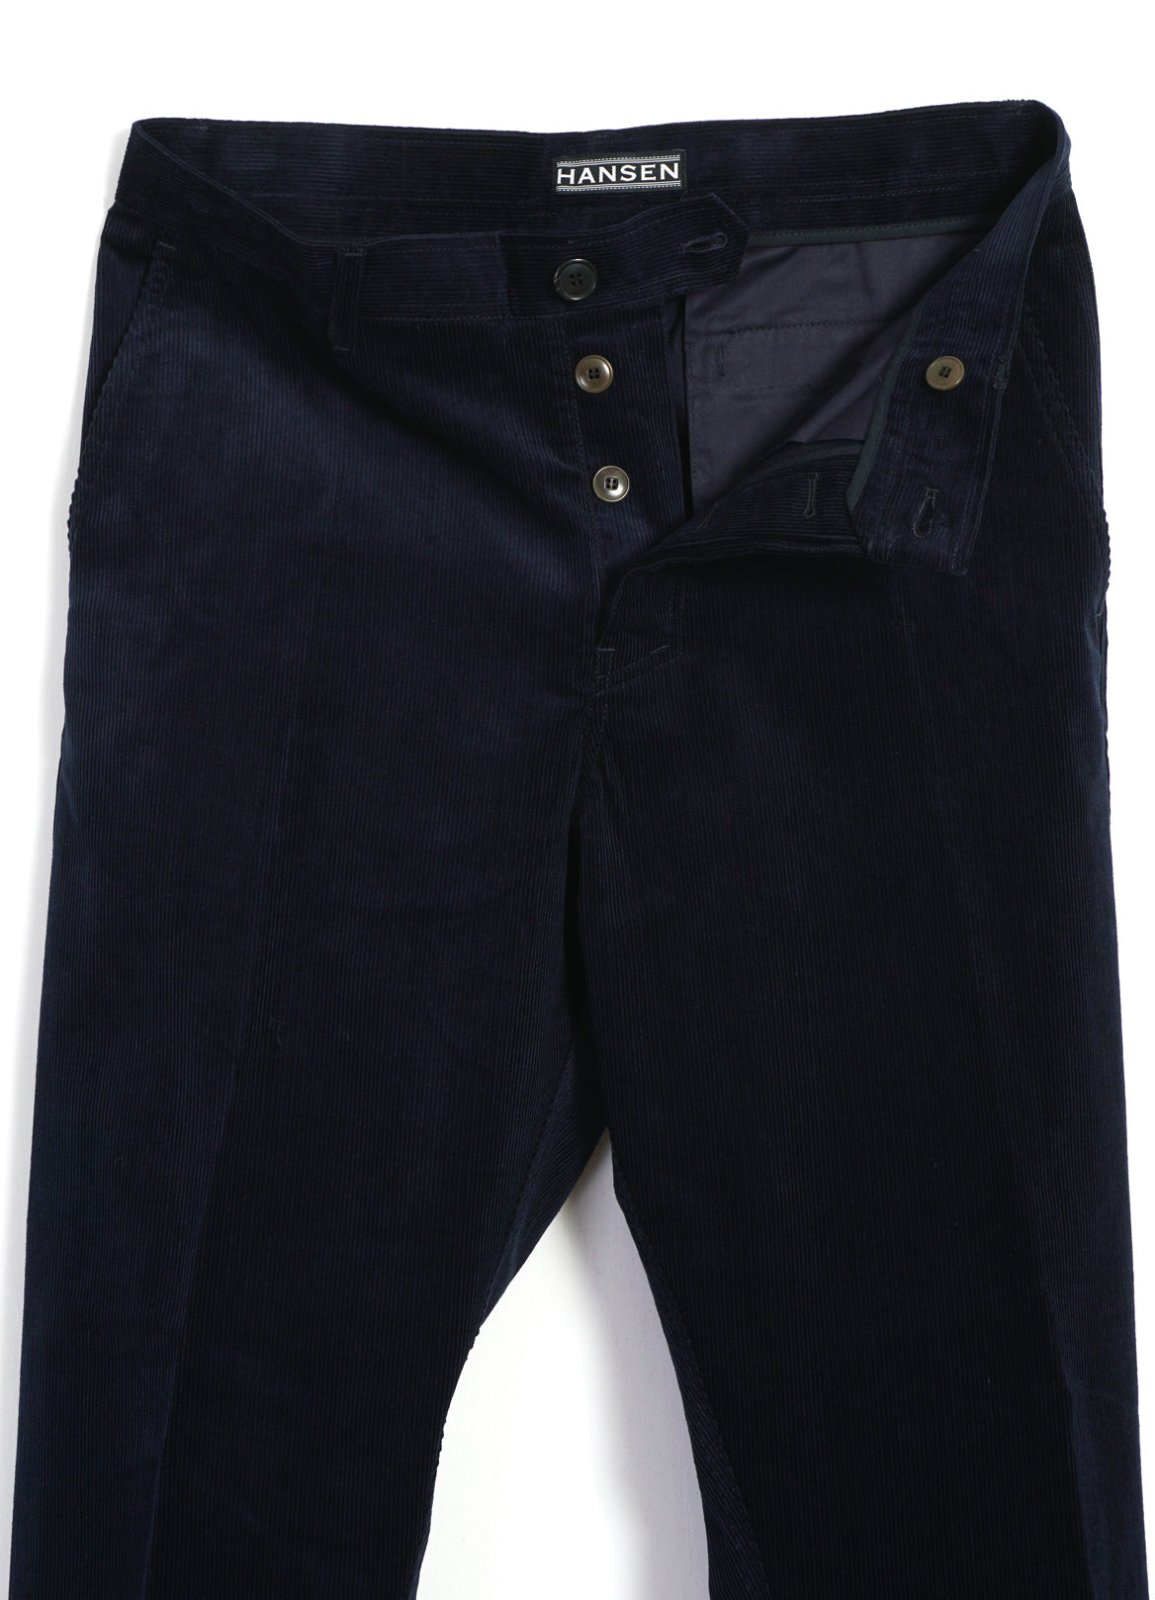 HANSEN GARMENTS - KEN | Wide Cut Trousers | Fluid Navy - HANSEN Garments